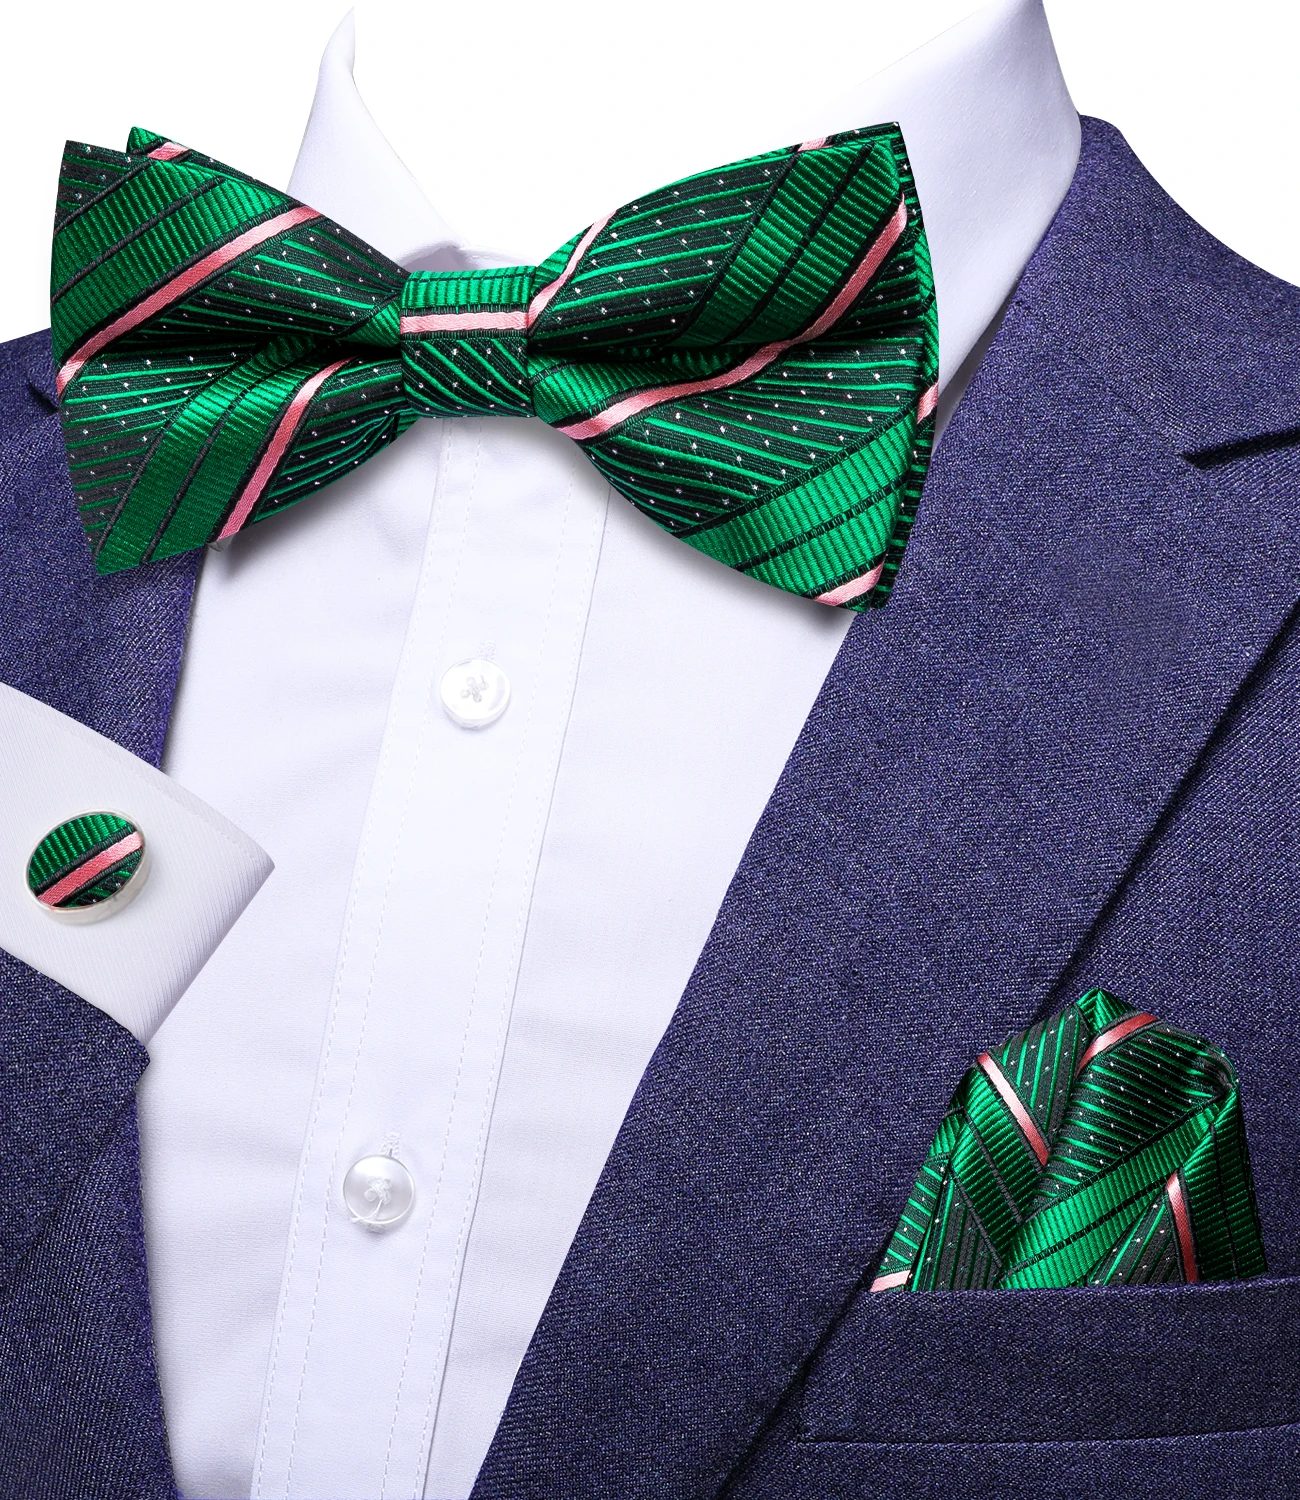 

Привет-галстук ЖАККАРДОВЫЙ полосатый зеленый Бабочка Шелковый мужской галстук-бабочка Hanky запонки галстук-бабочка для мужчин Бизнес Свадебная вечеринка оптовая продажа